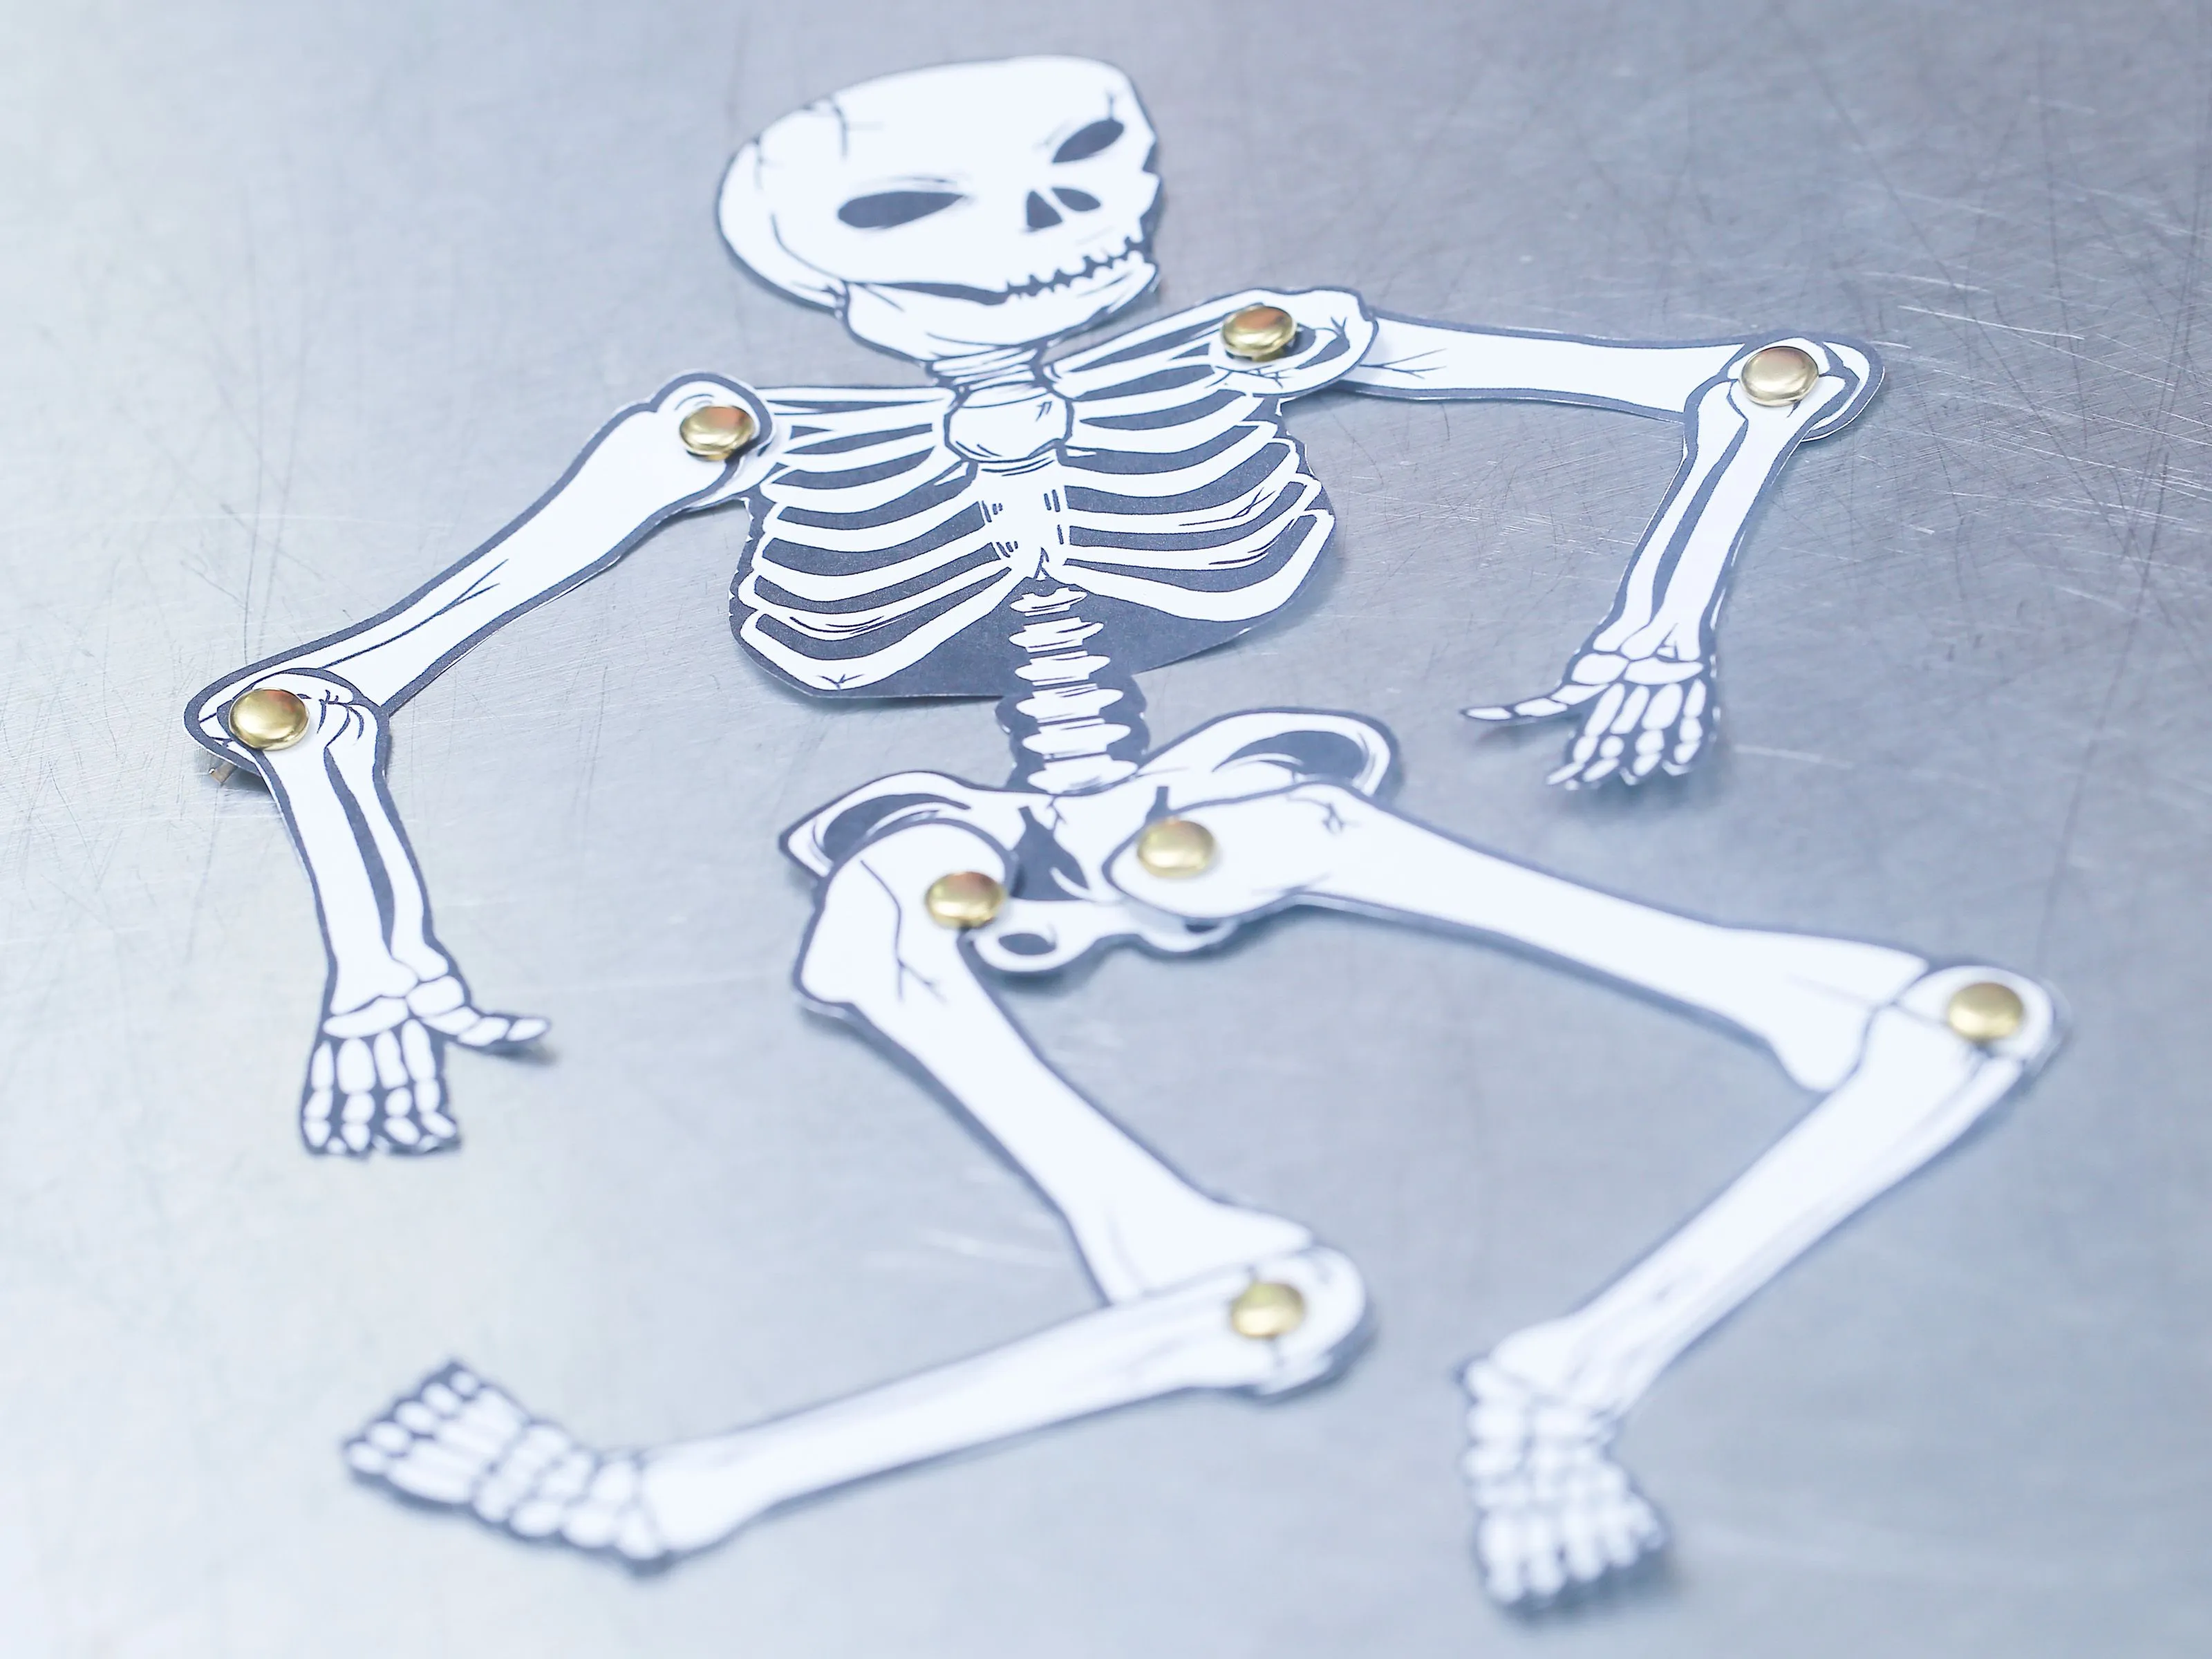 Cómo hacer un esqueleto humano de papel: 12 Pasos